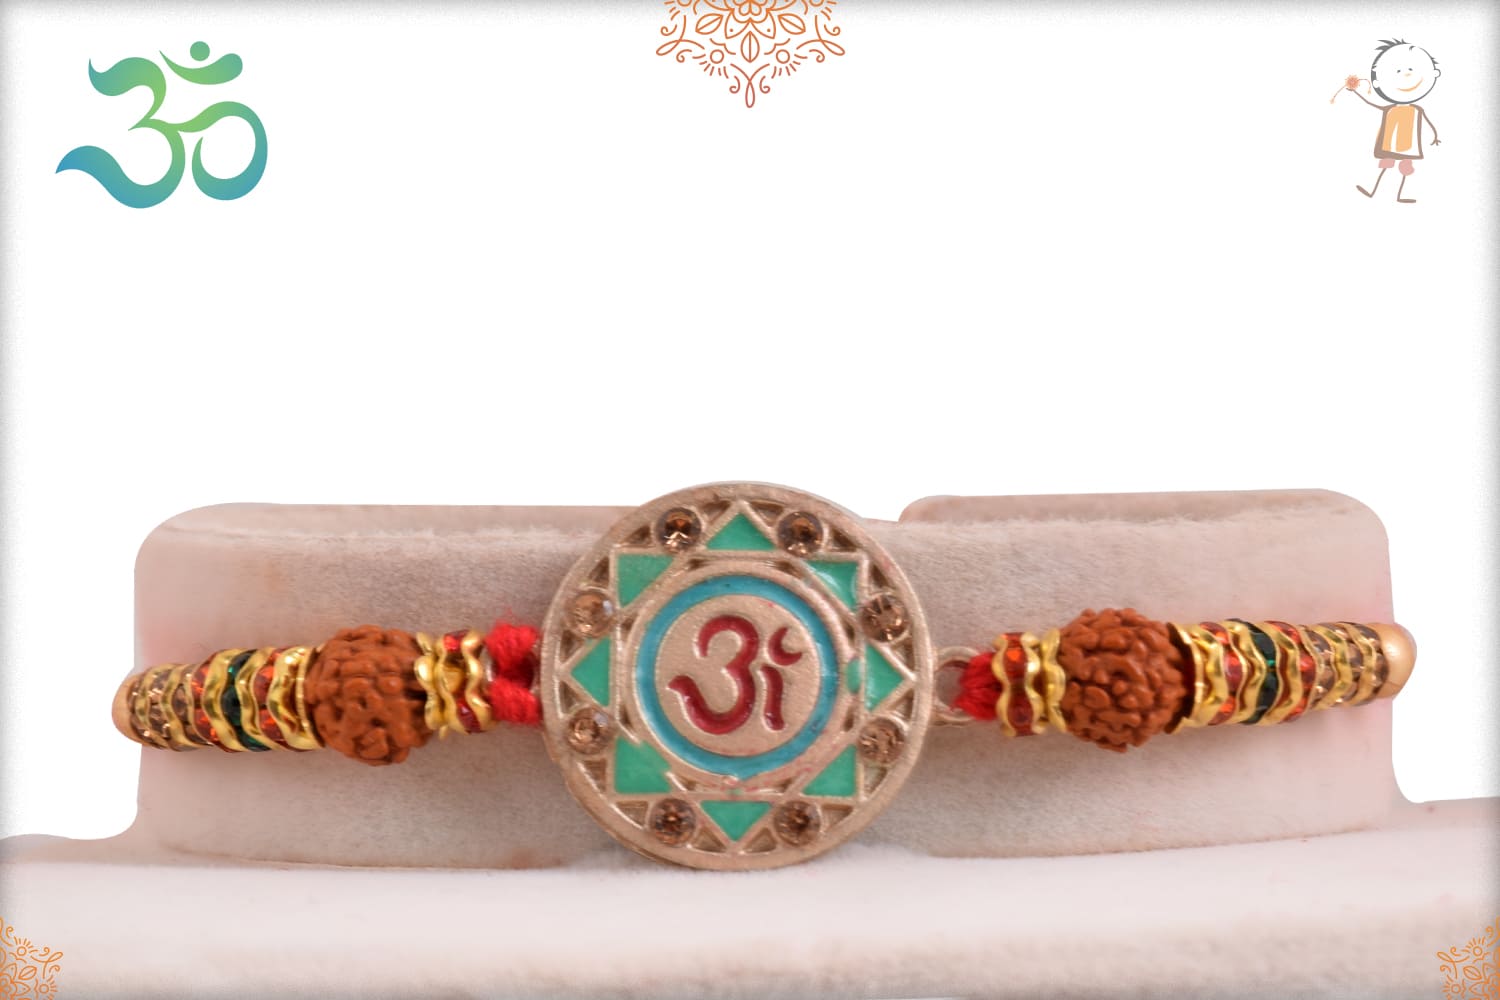 Divine OM Rakhi with Rudraksh and Diamond Rings - Babla Rakhi